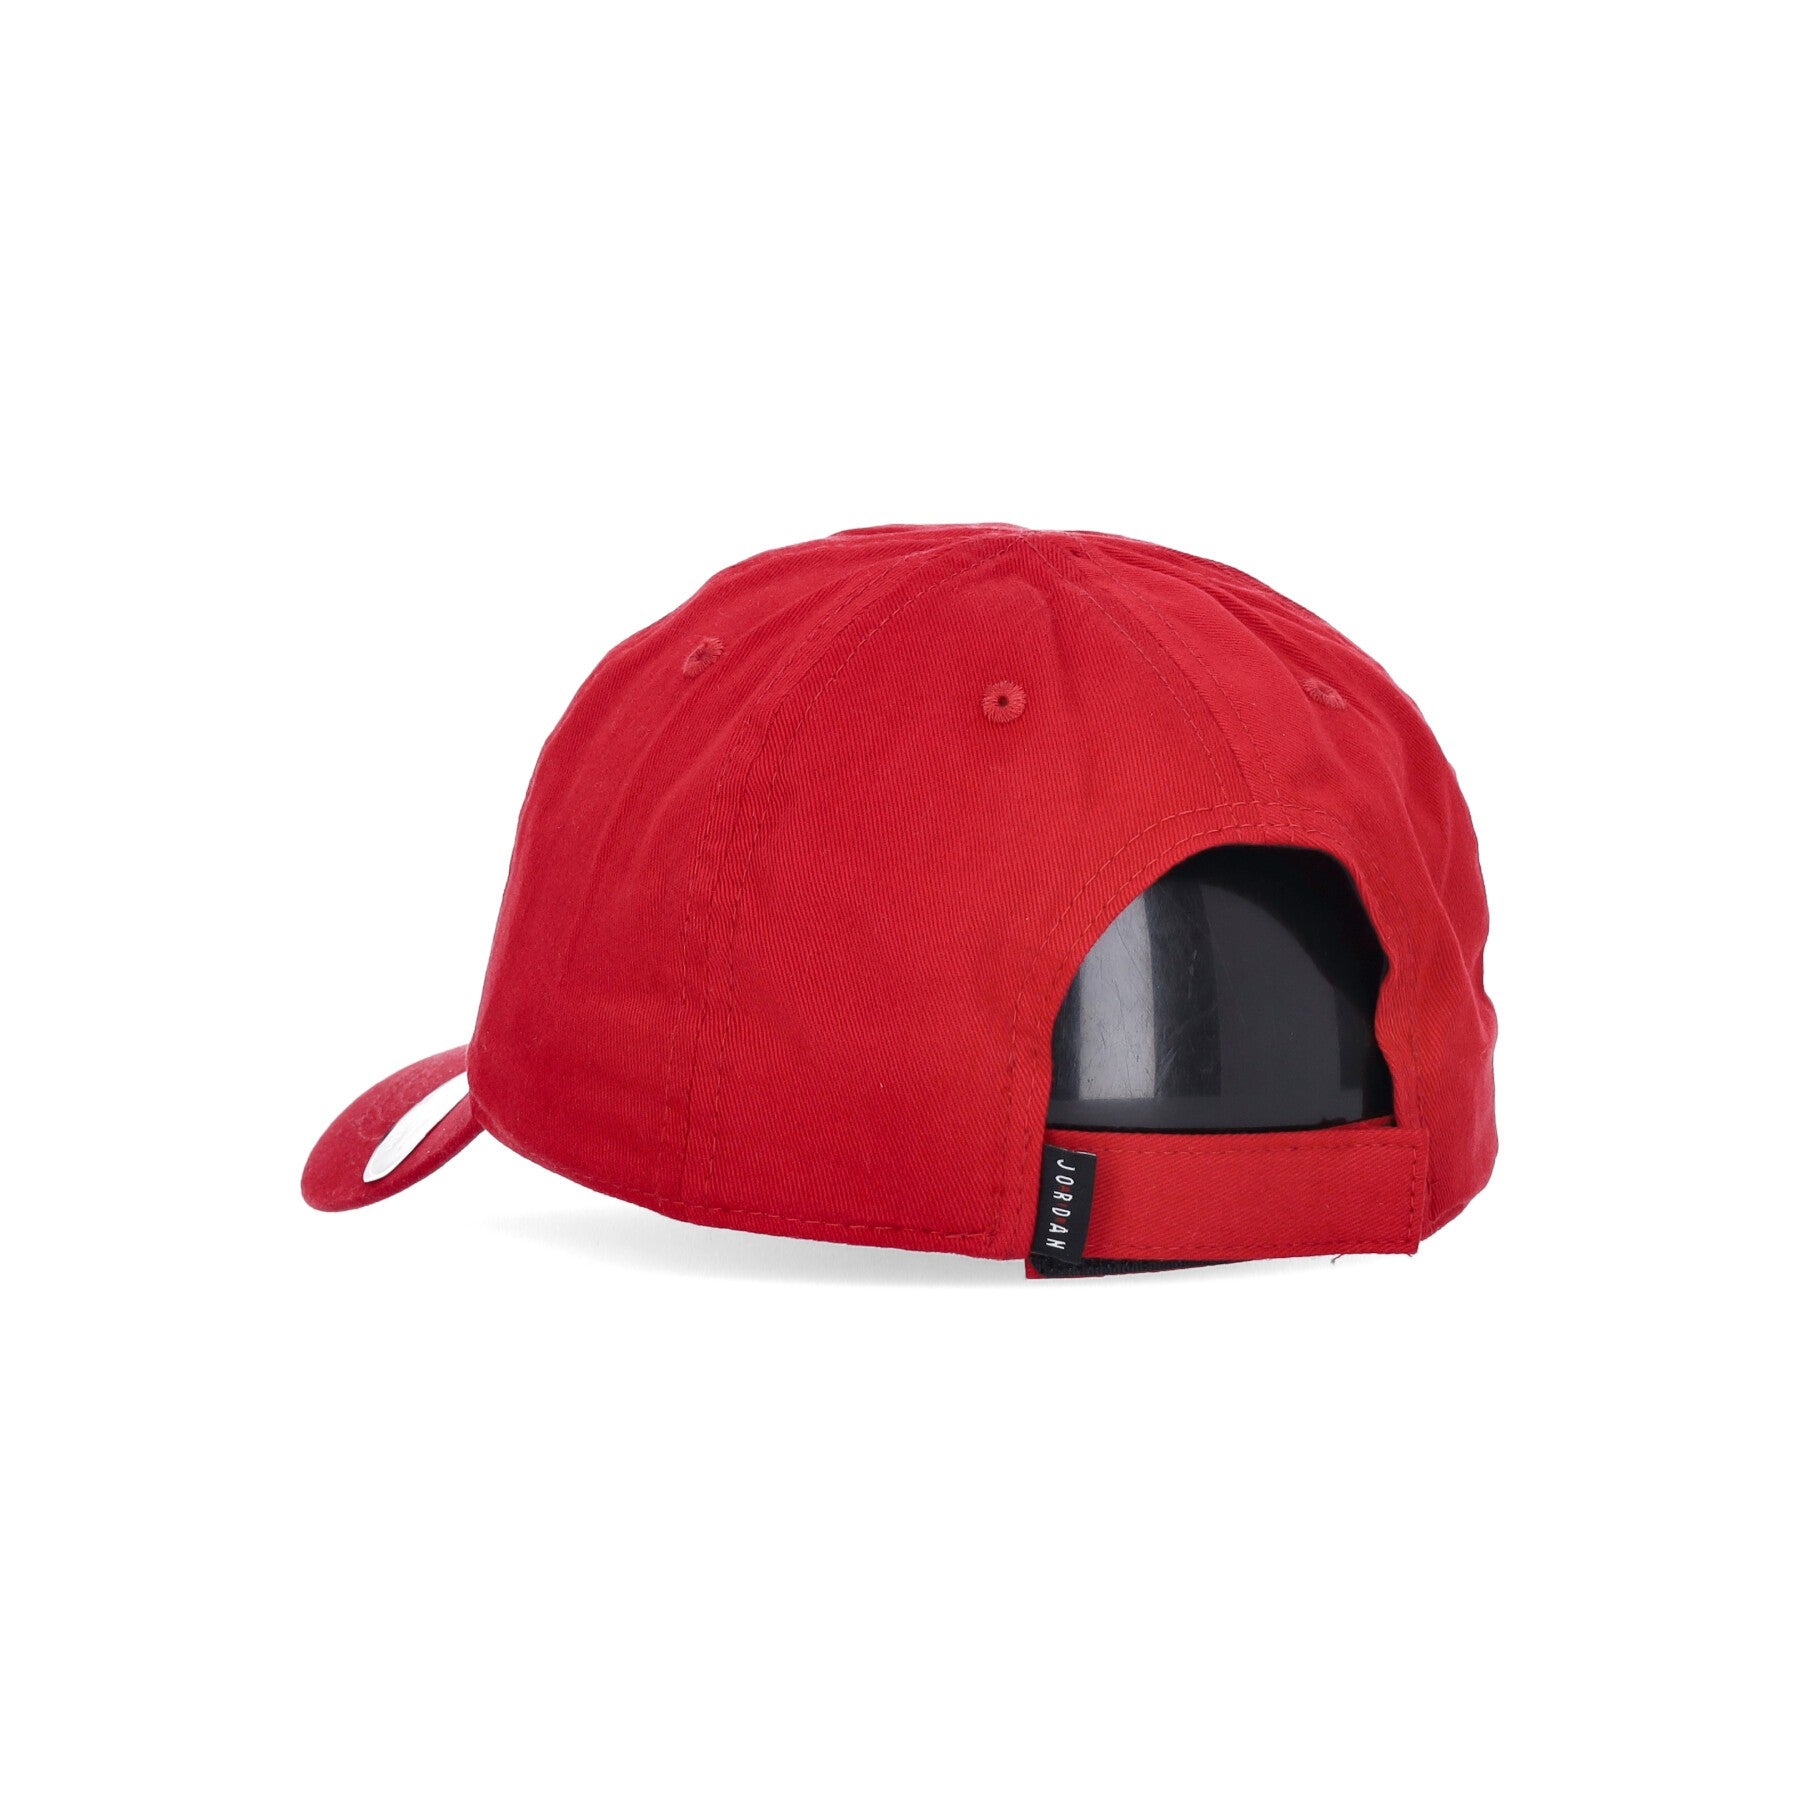 Curved Visor Cap for Boys Hbr Strapback Gym Red